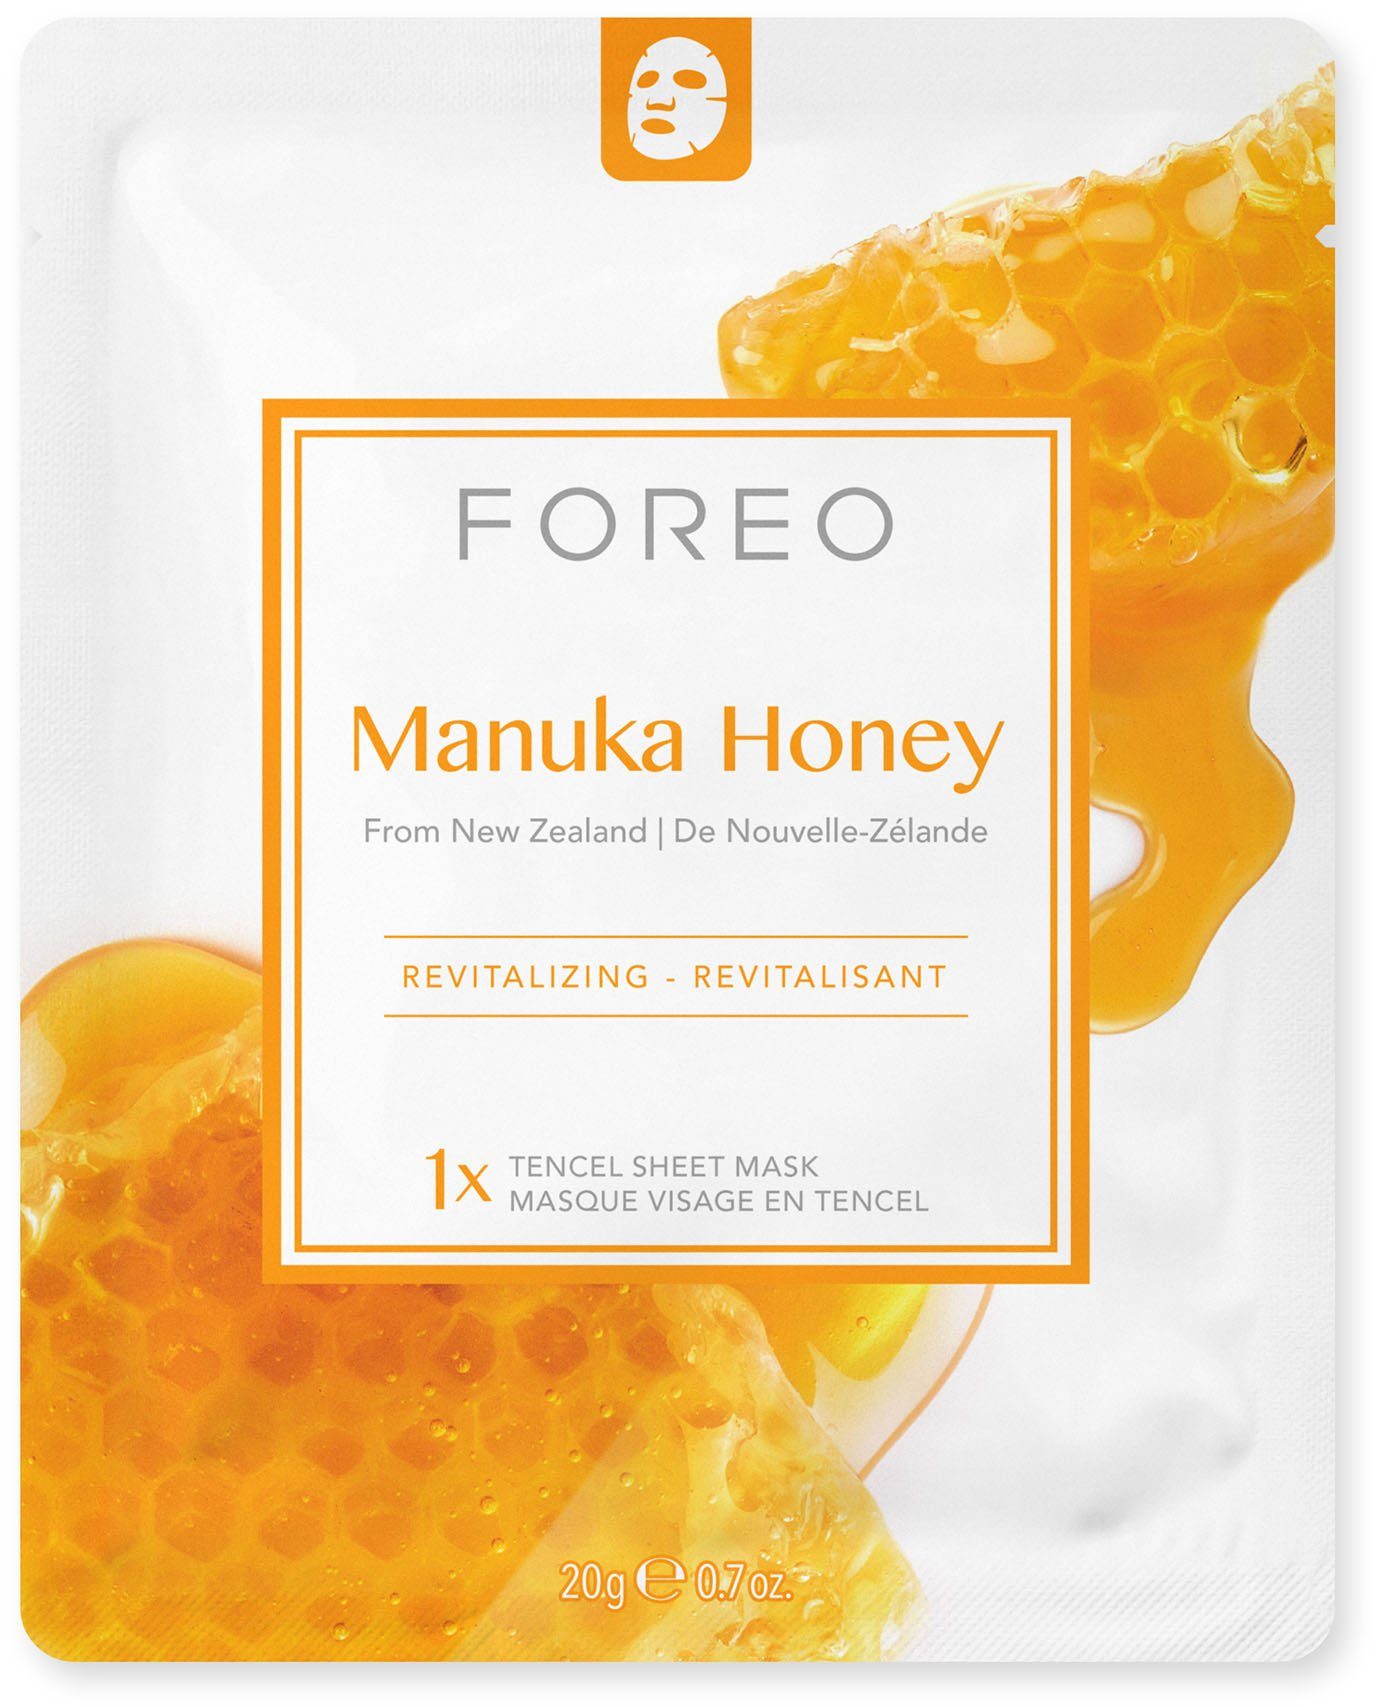 Collection Manuka Honey, FOREO To Sheet Gesichtsmaske 3-tlg. Face Masks Farm